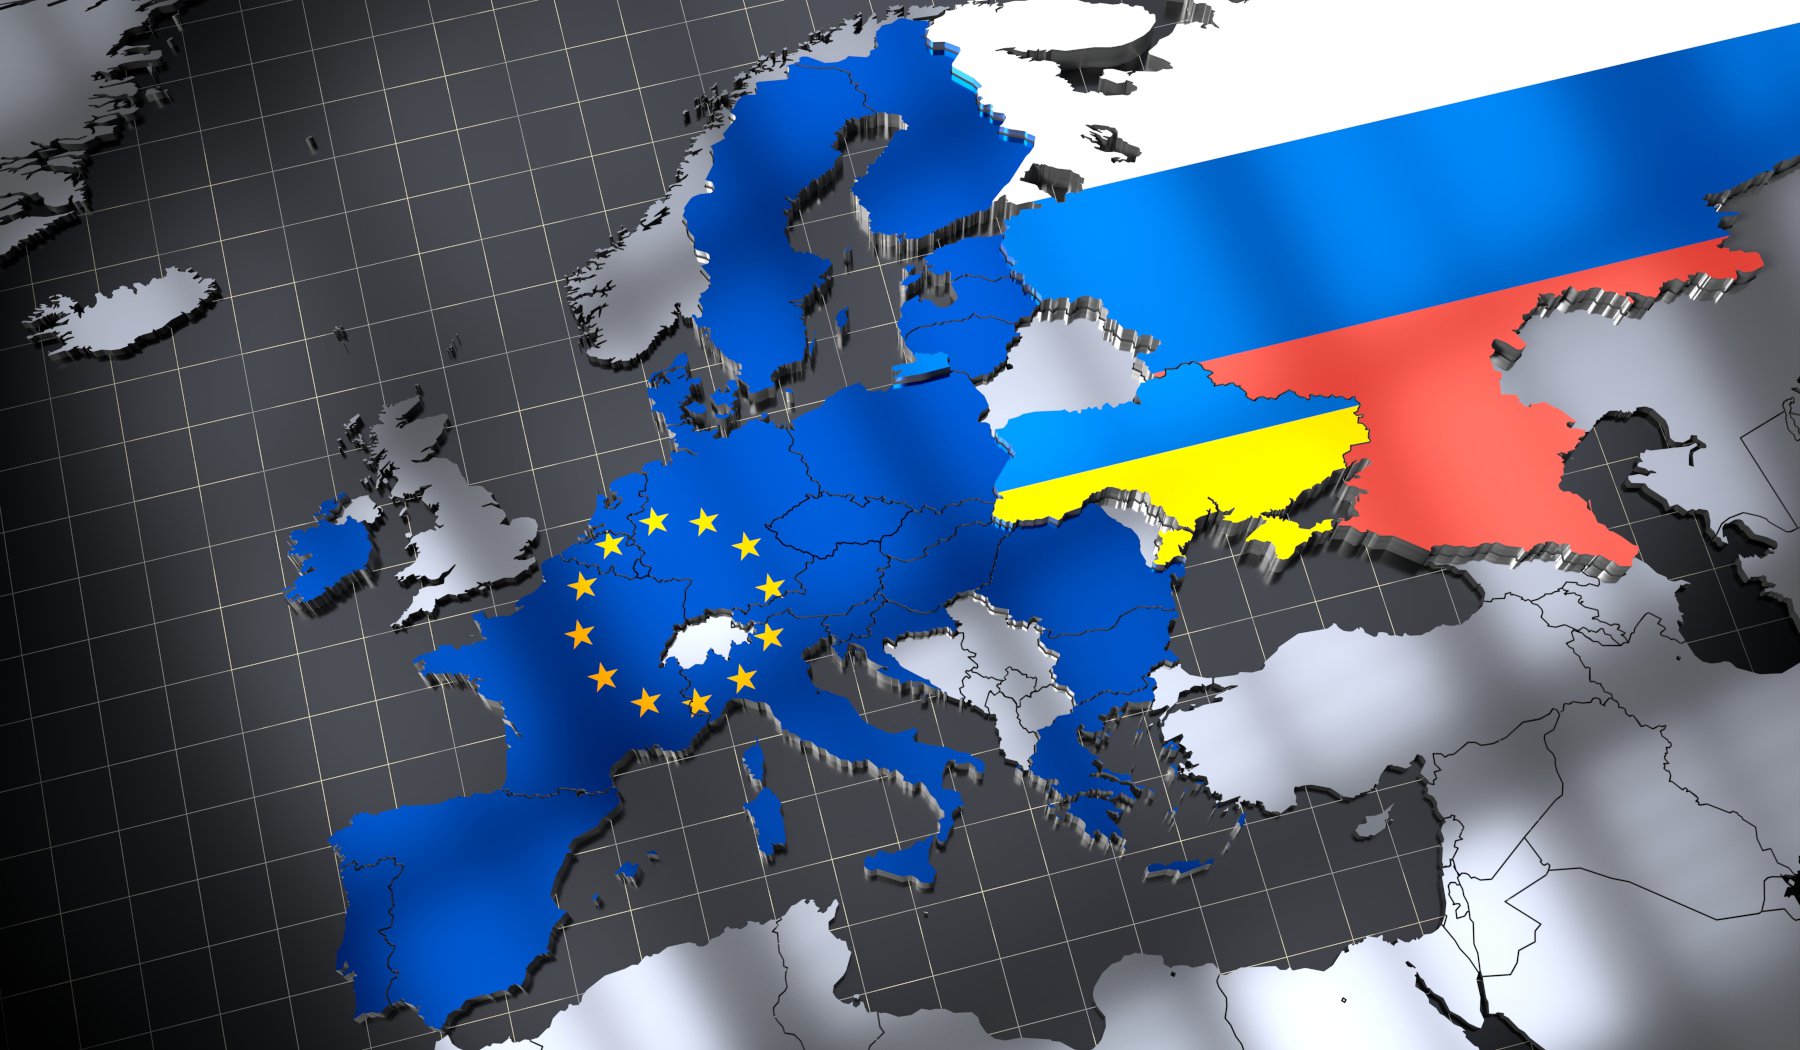 Ρέζνικοφ προς ΕΕ: Στηρίξτε το σχέδιο αγοράς 1 εκατ. οβίδων πυροβολικού